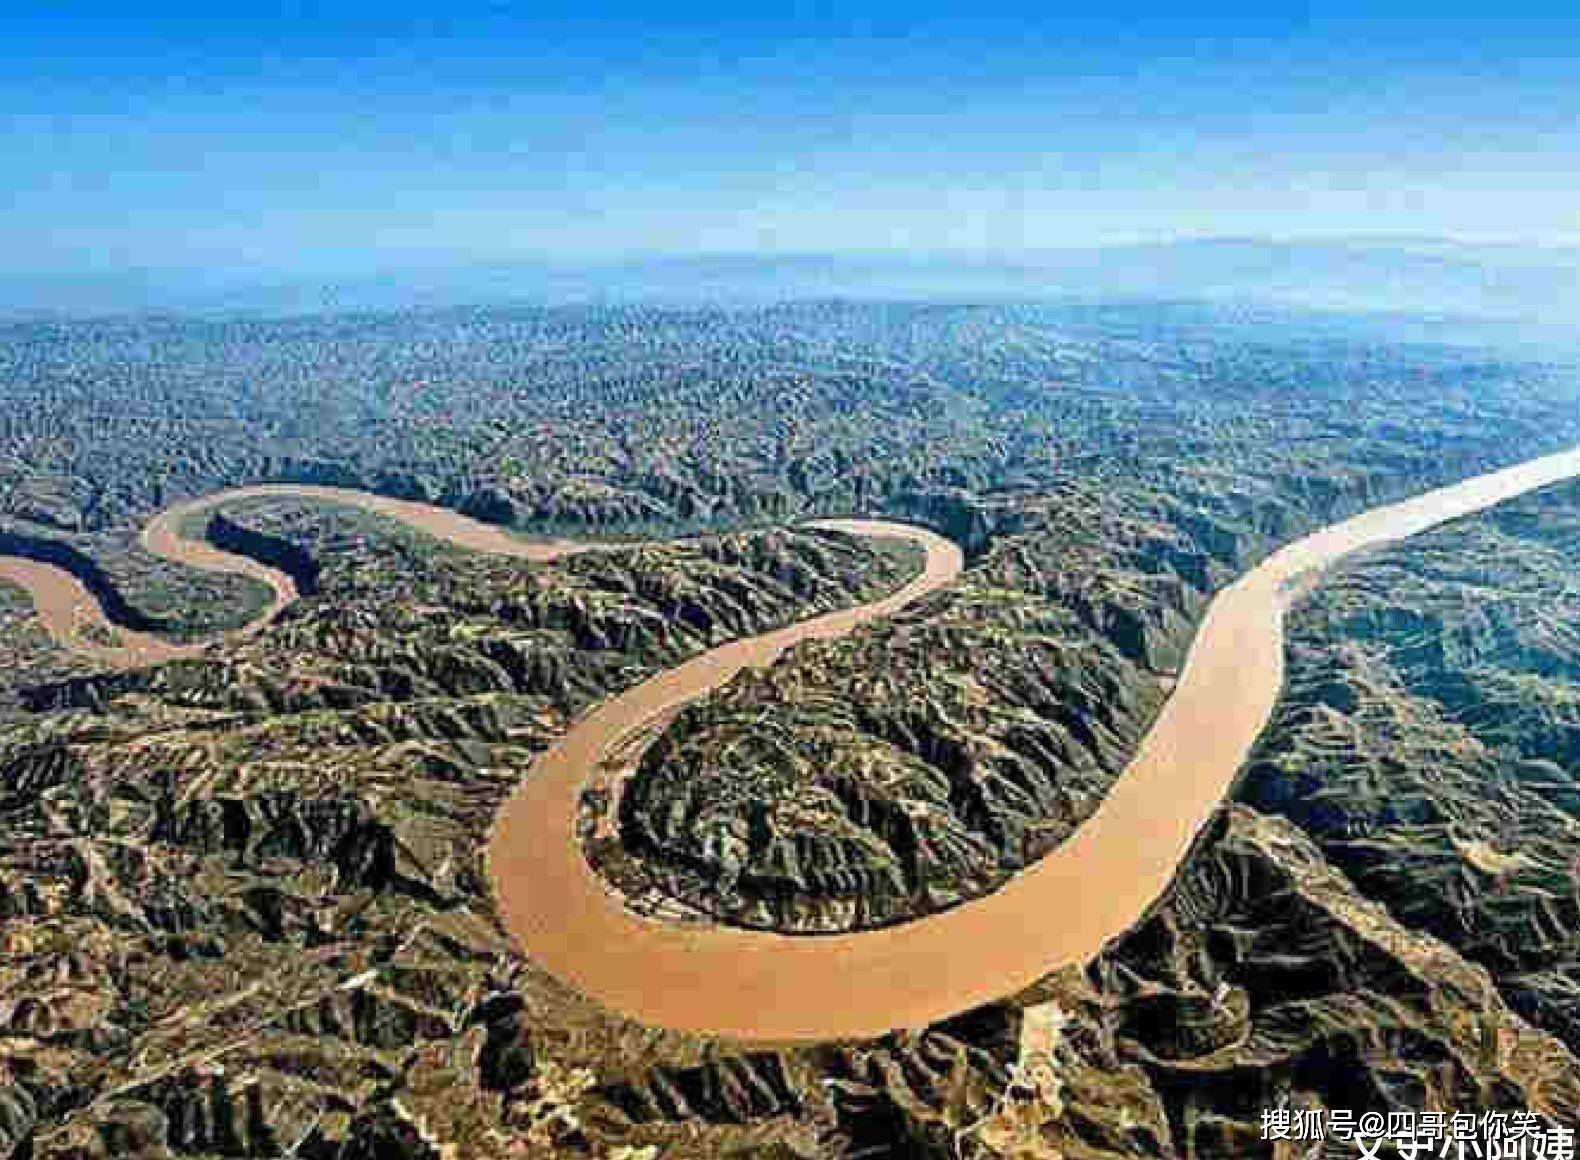 原创陕西有个天下黄河第一湾弧度超320度似一幅天然太极图